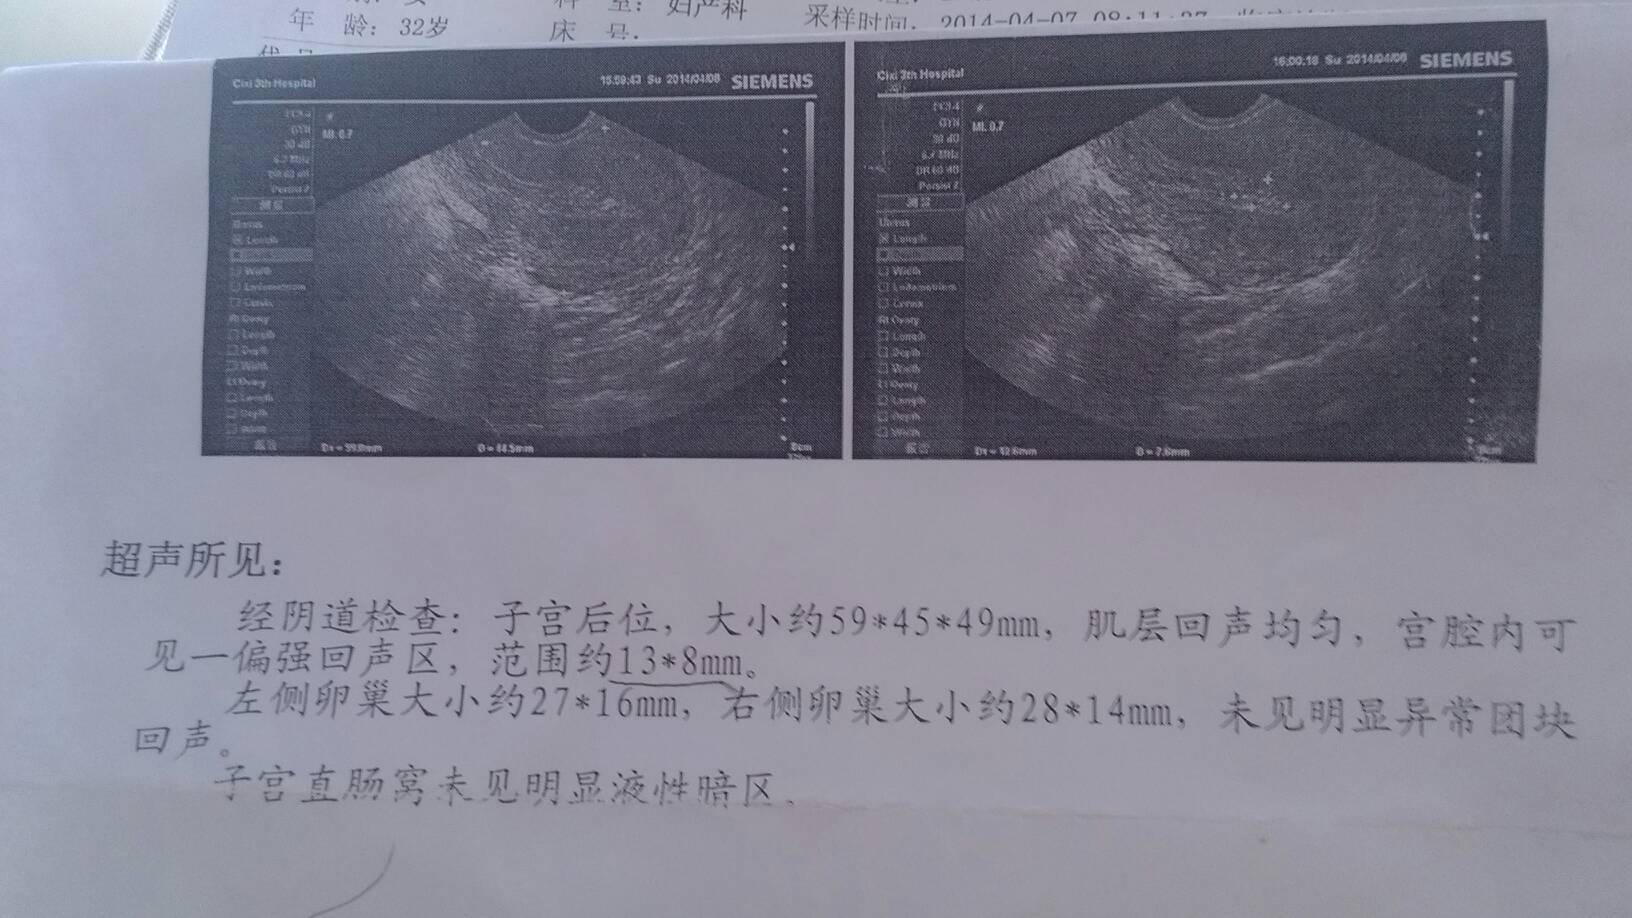 看到孕囊组织排除,目前的b超检查结果考虑是宫腔内少许残留的蜕膜组织